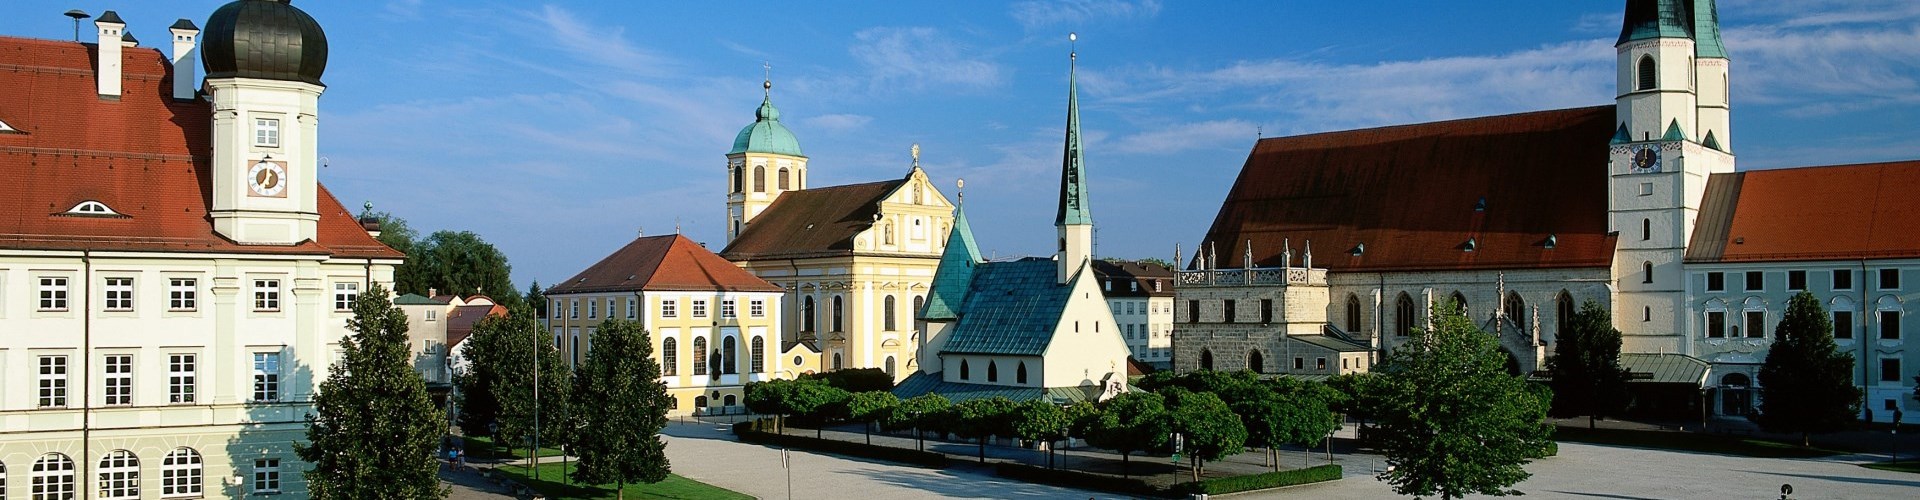 Der Kapellplatz Altötting mit Rathaus, Gnadenkapelle und Stiftspfarrkirche.